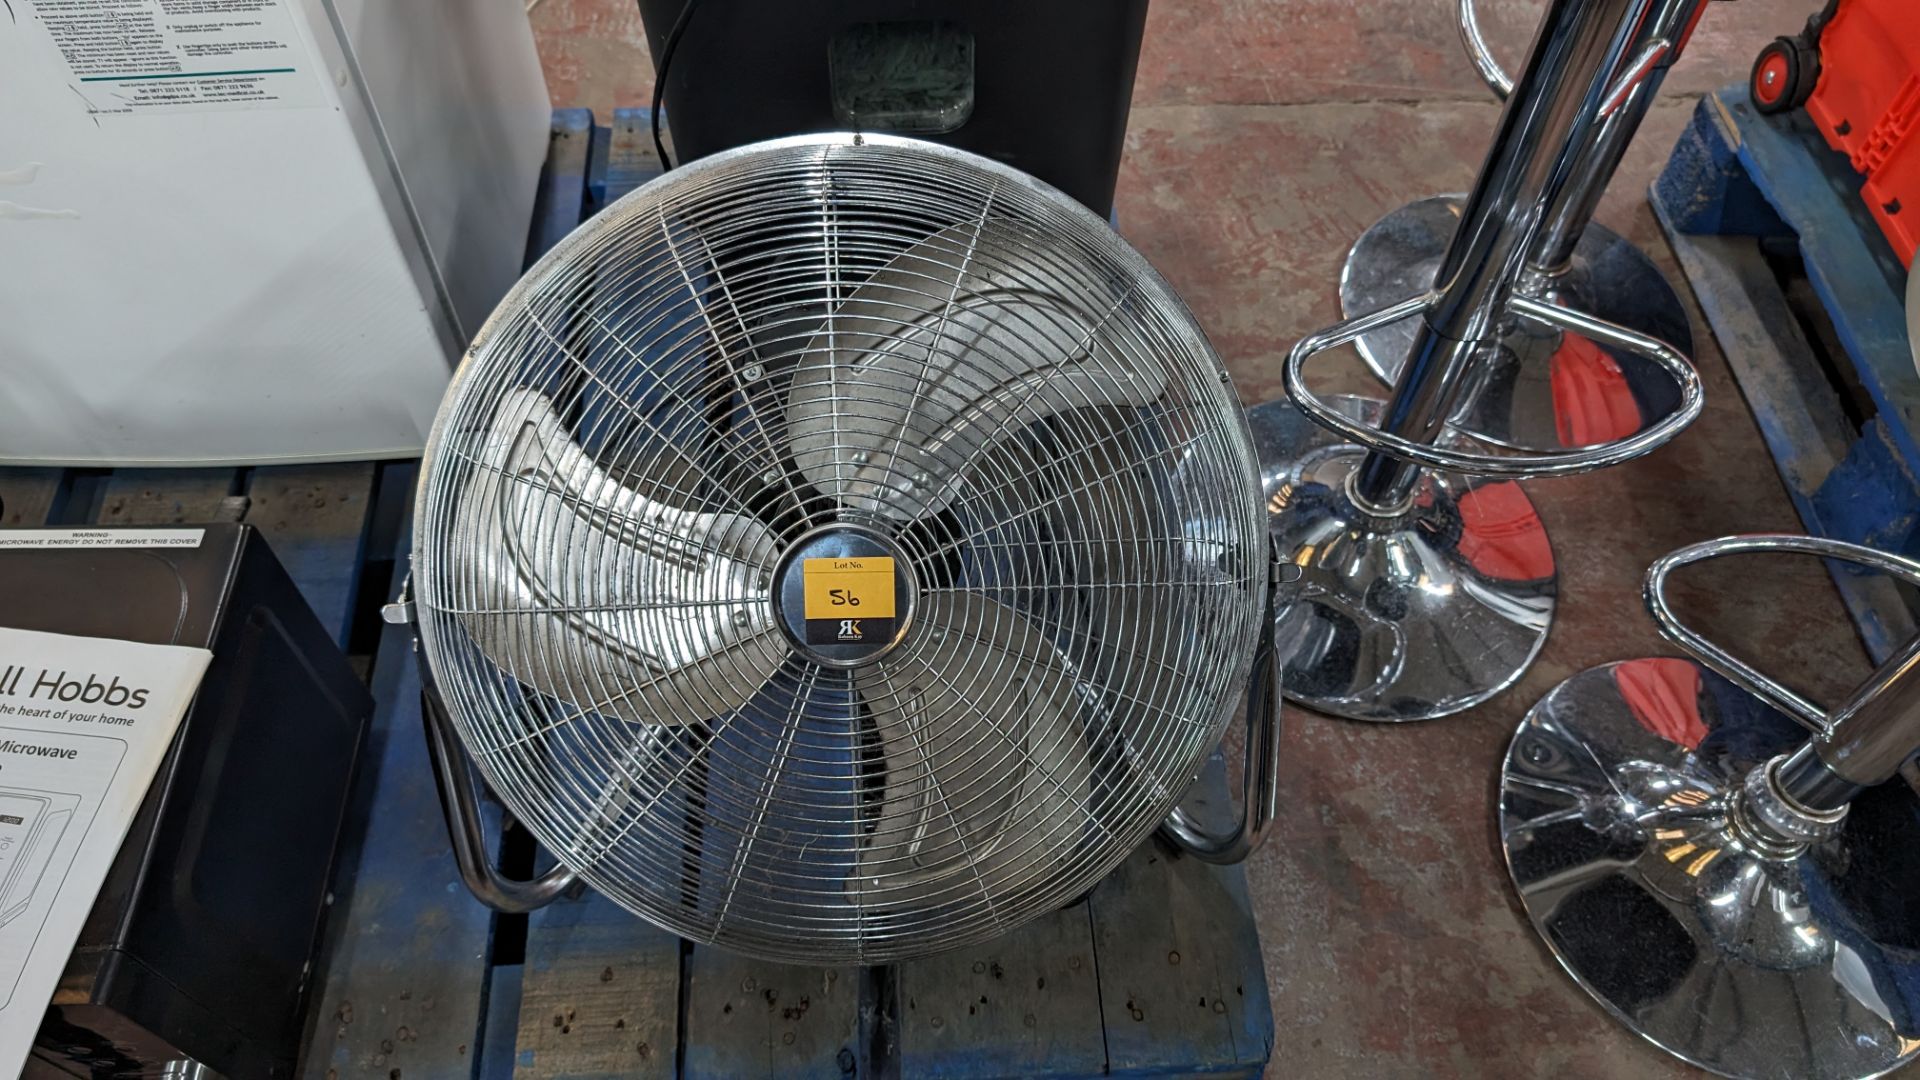 Large metal fan